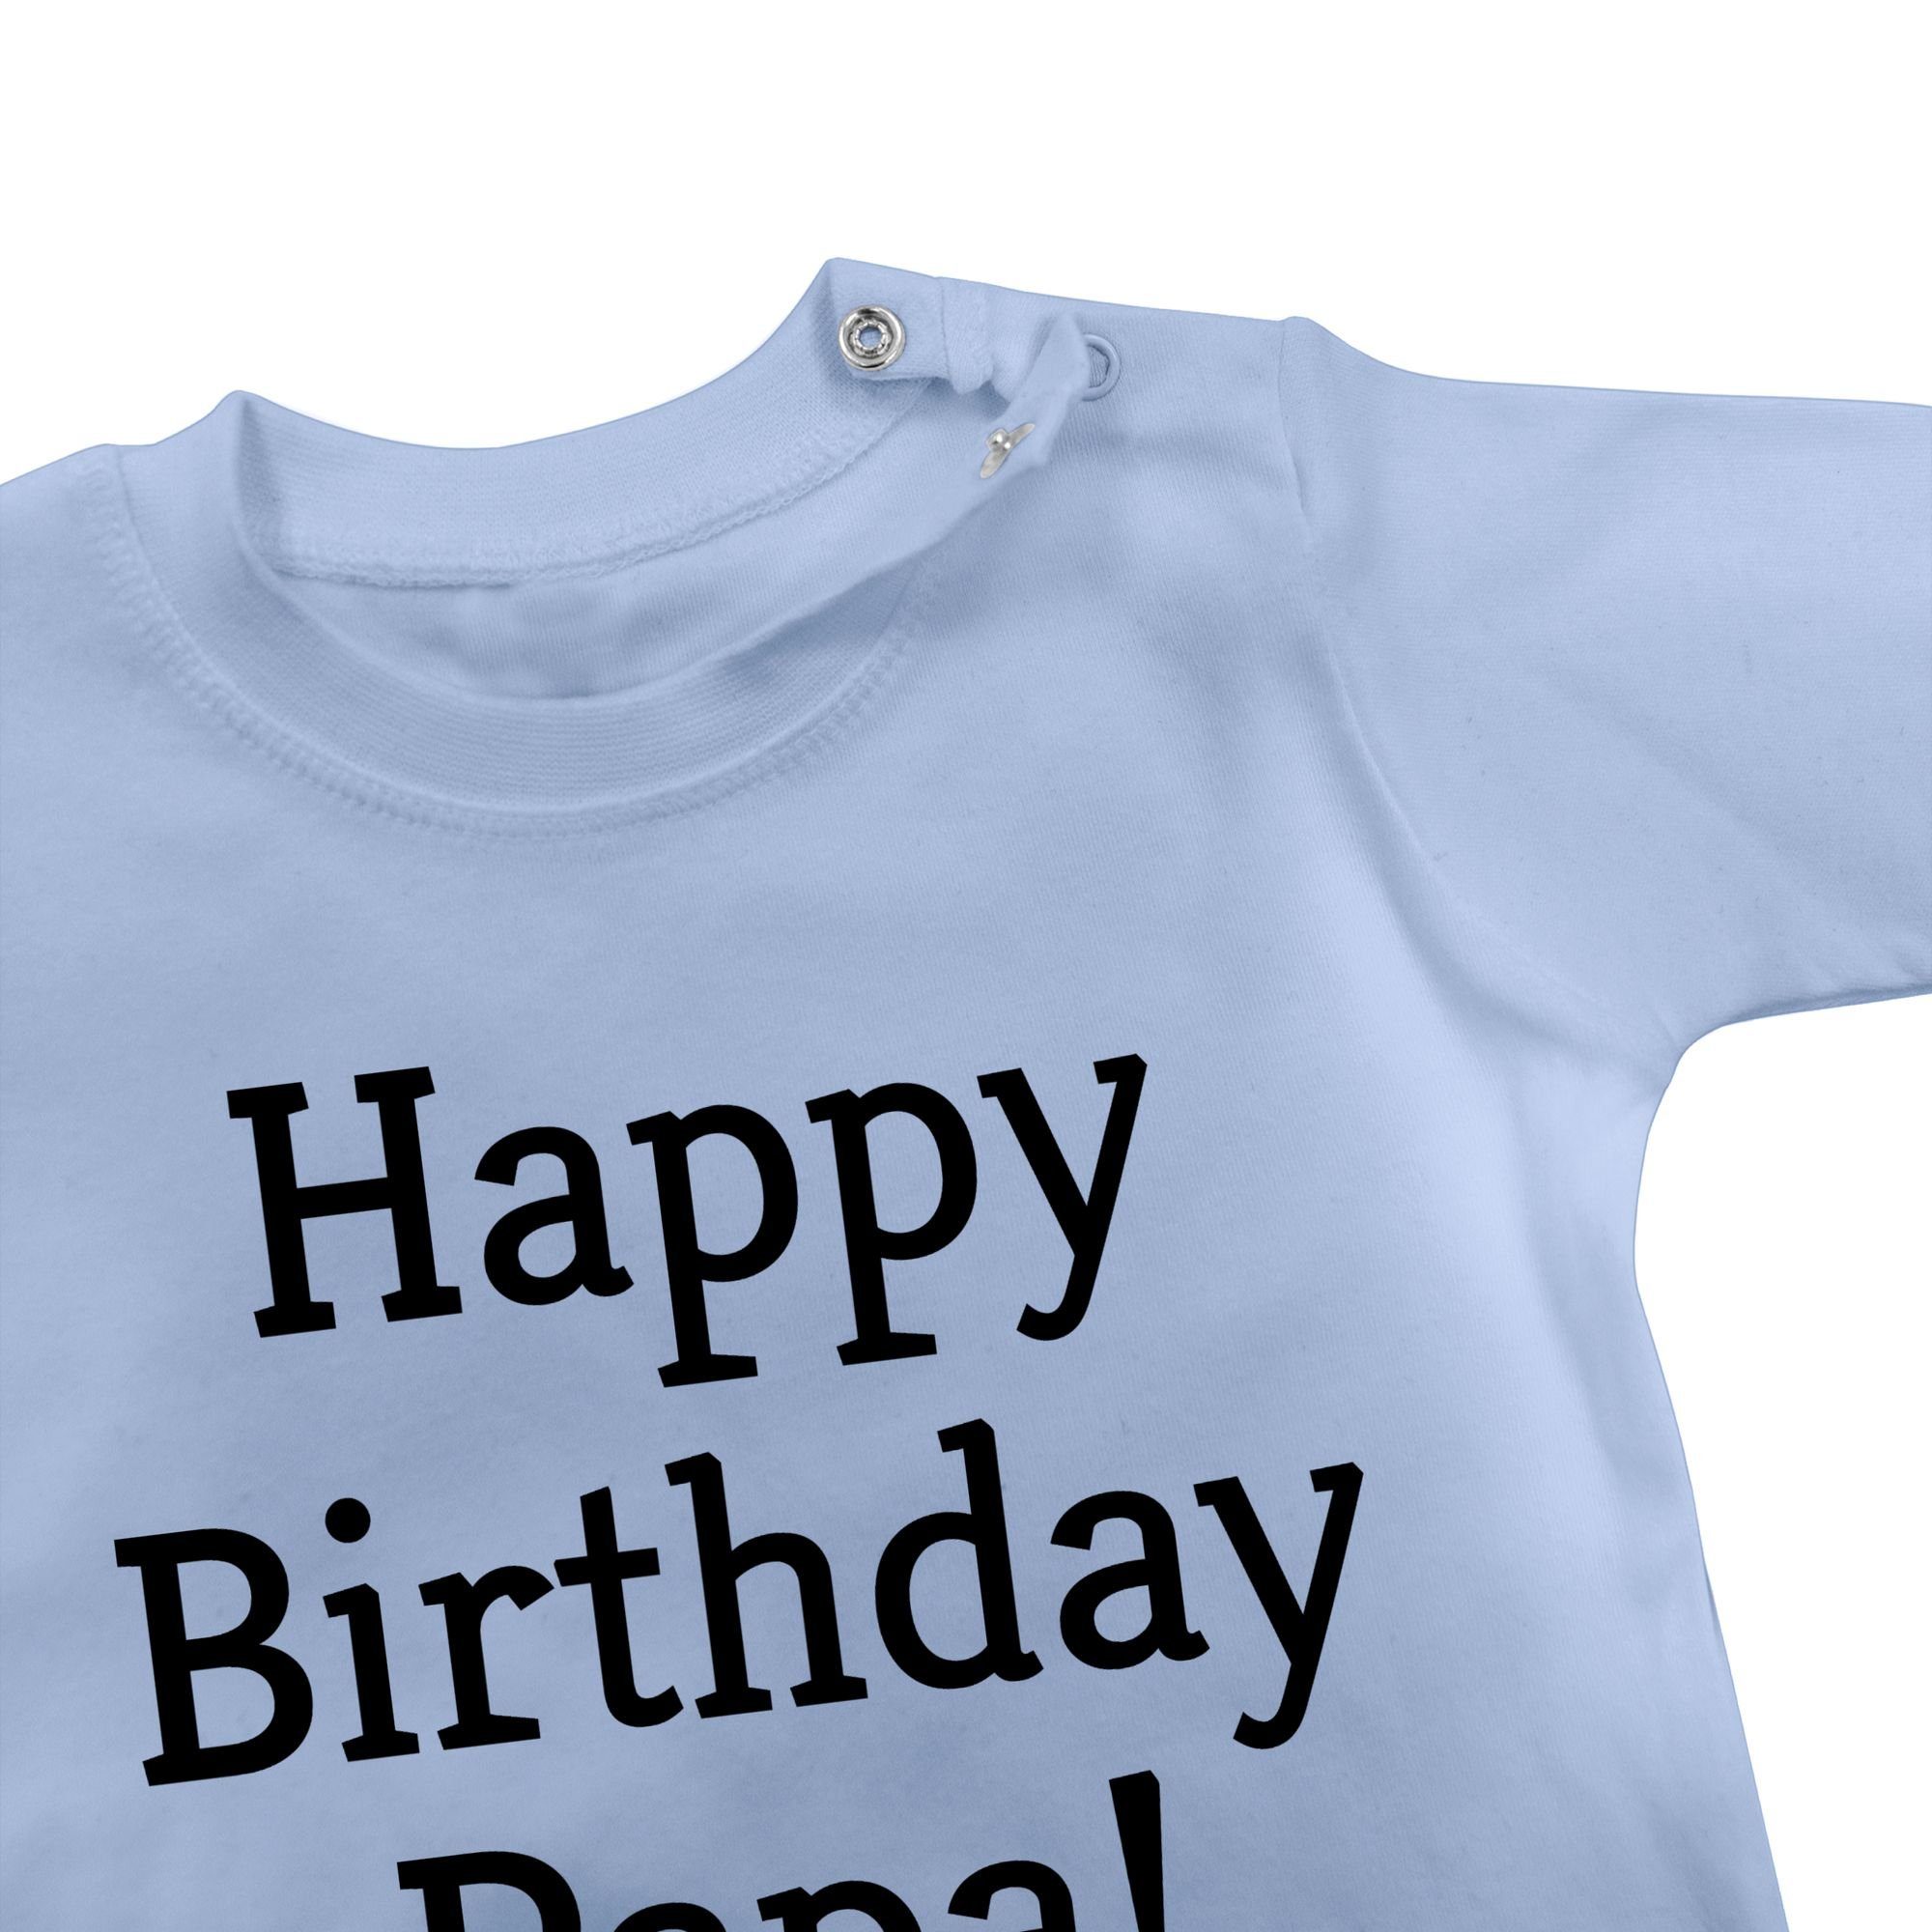 bin Ich Geschenk! Happy Birthday Babyblau Shirtracer T-Shirt das Geschenke Baby 2 Event Papa!